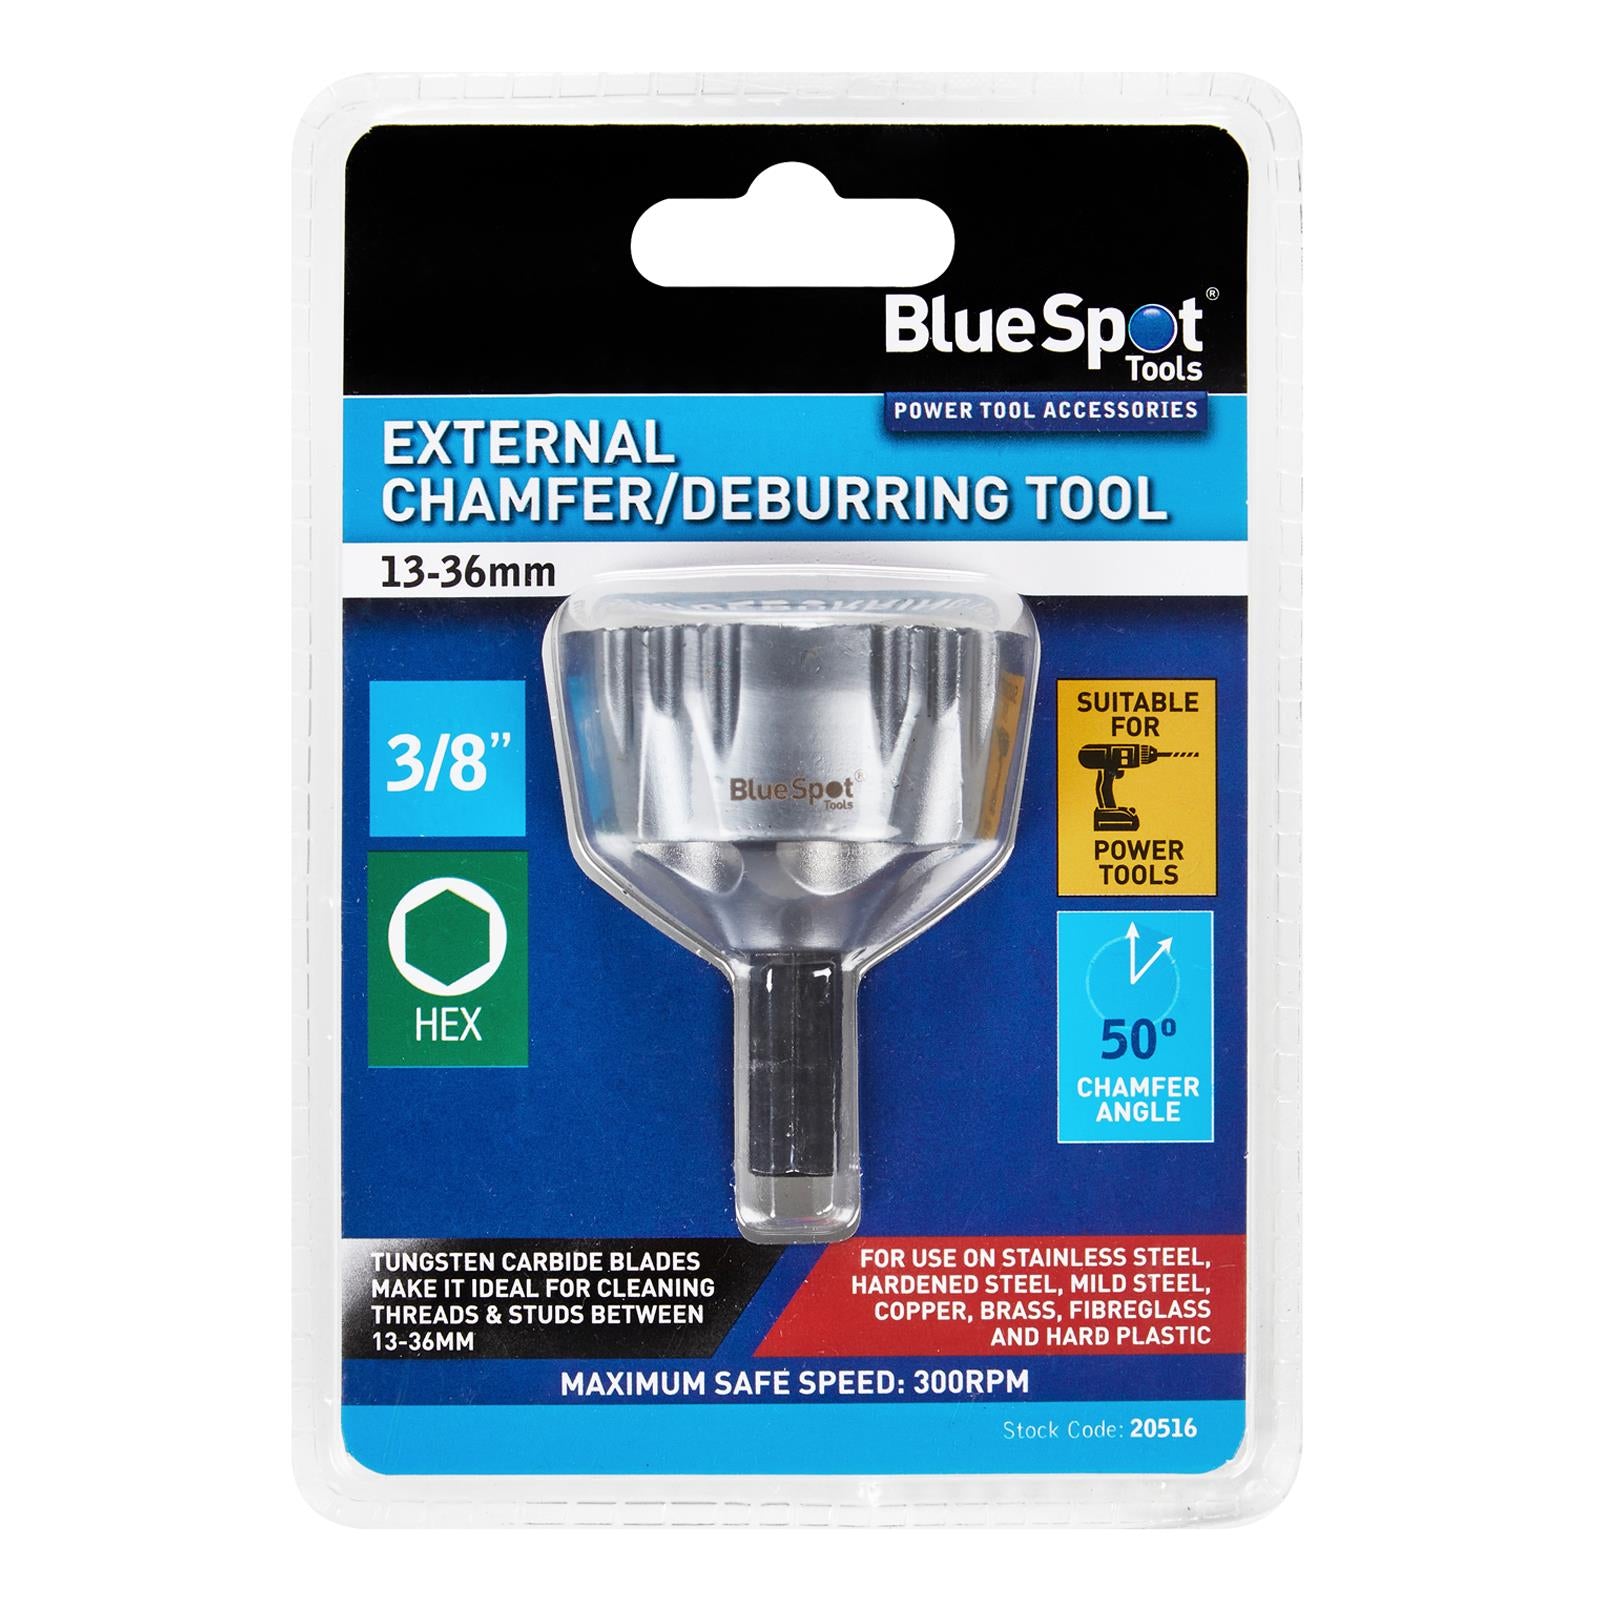 BlueSpot External Chamfer Deburring Tool 13-36mm